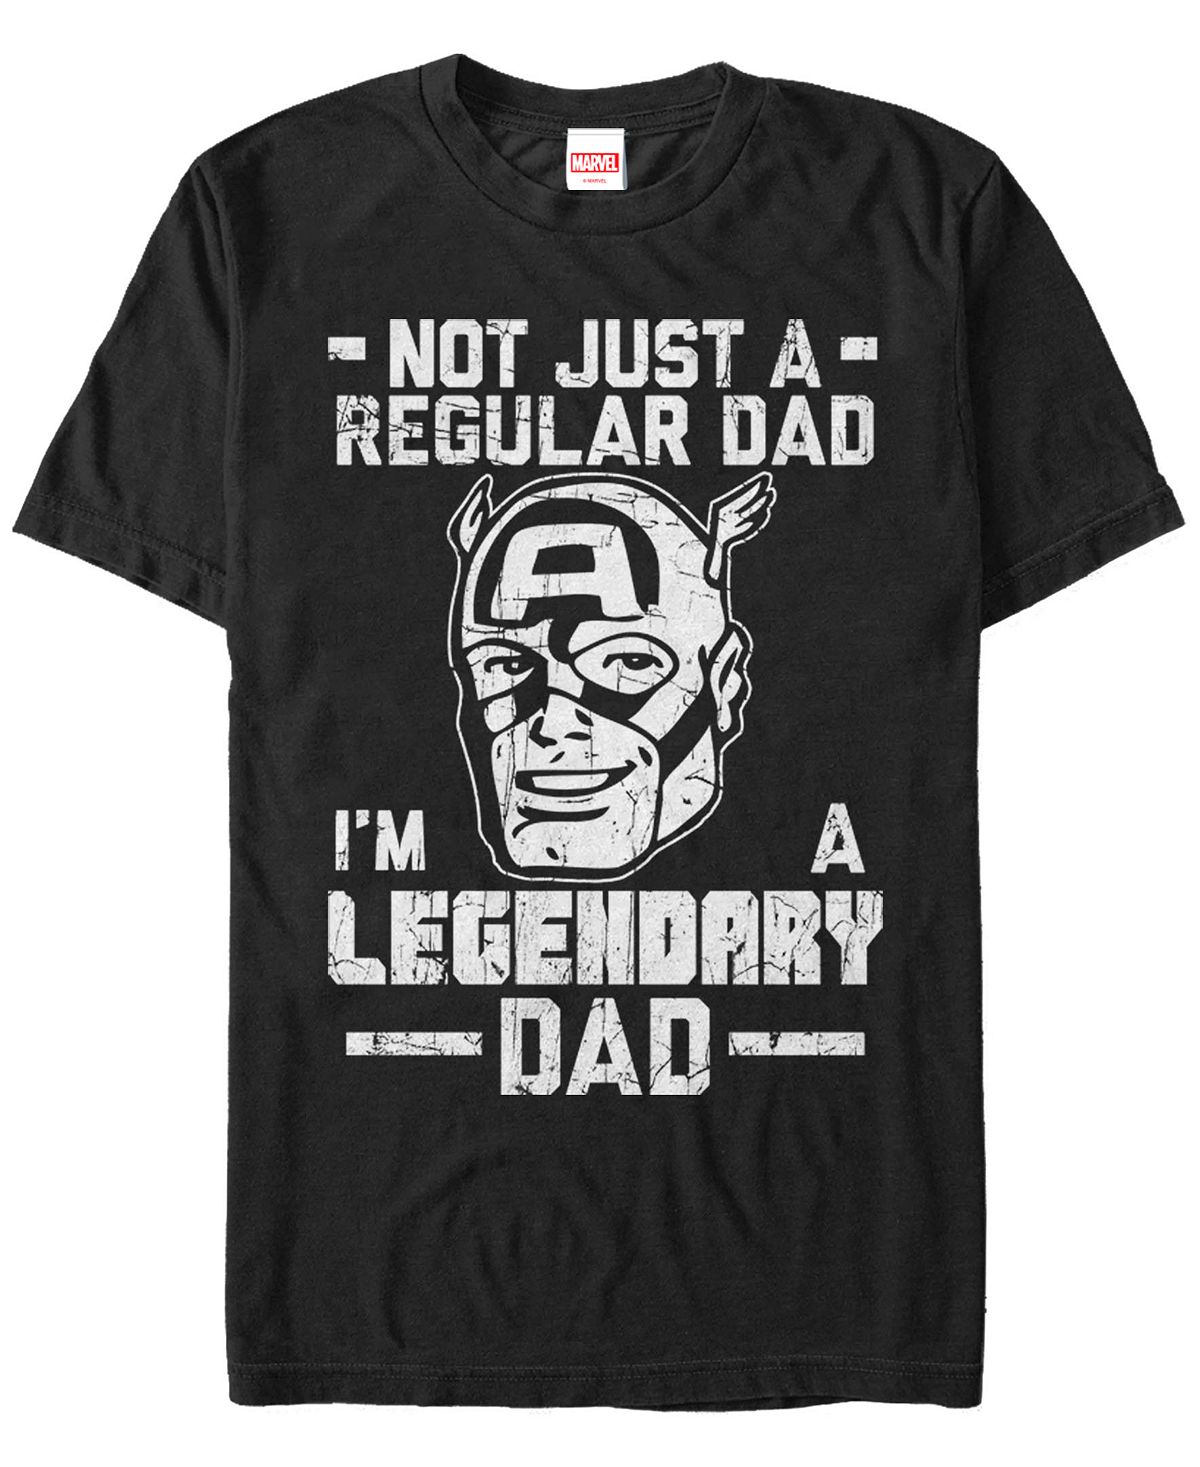 Мужская футболка legendary dad man с коротким рукавом с круглым вырезом Fifth Sun, черный